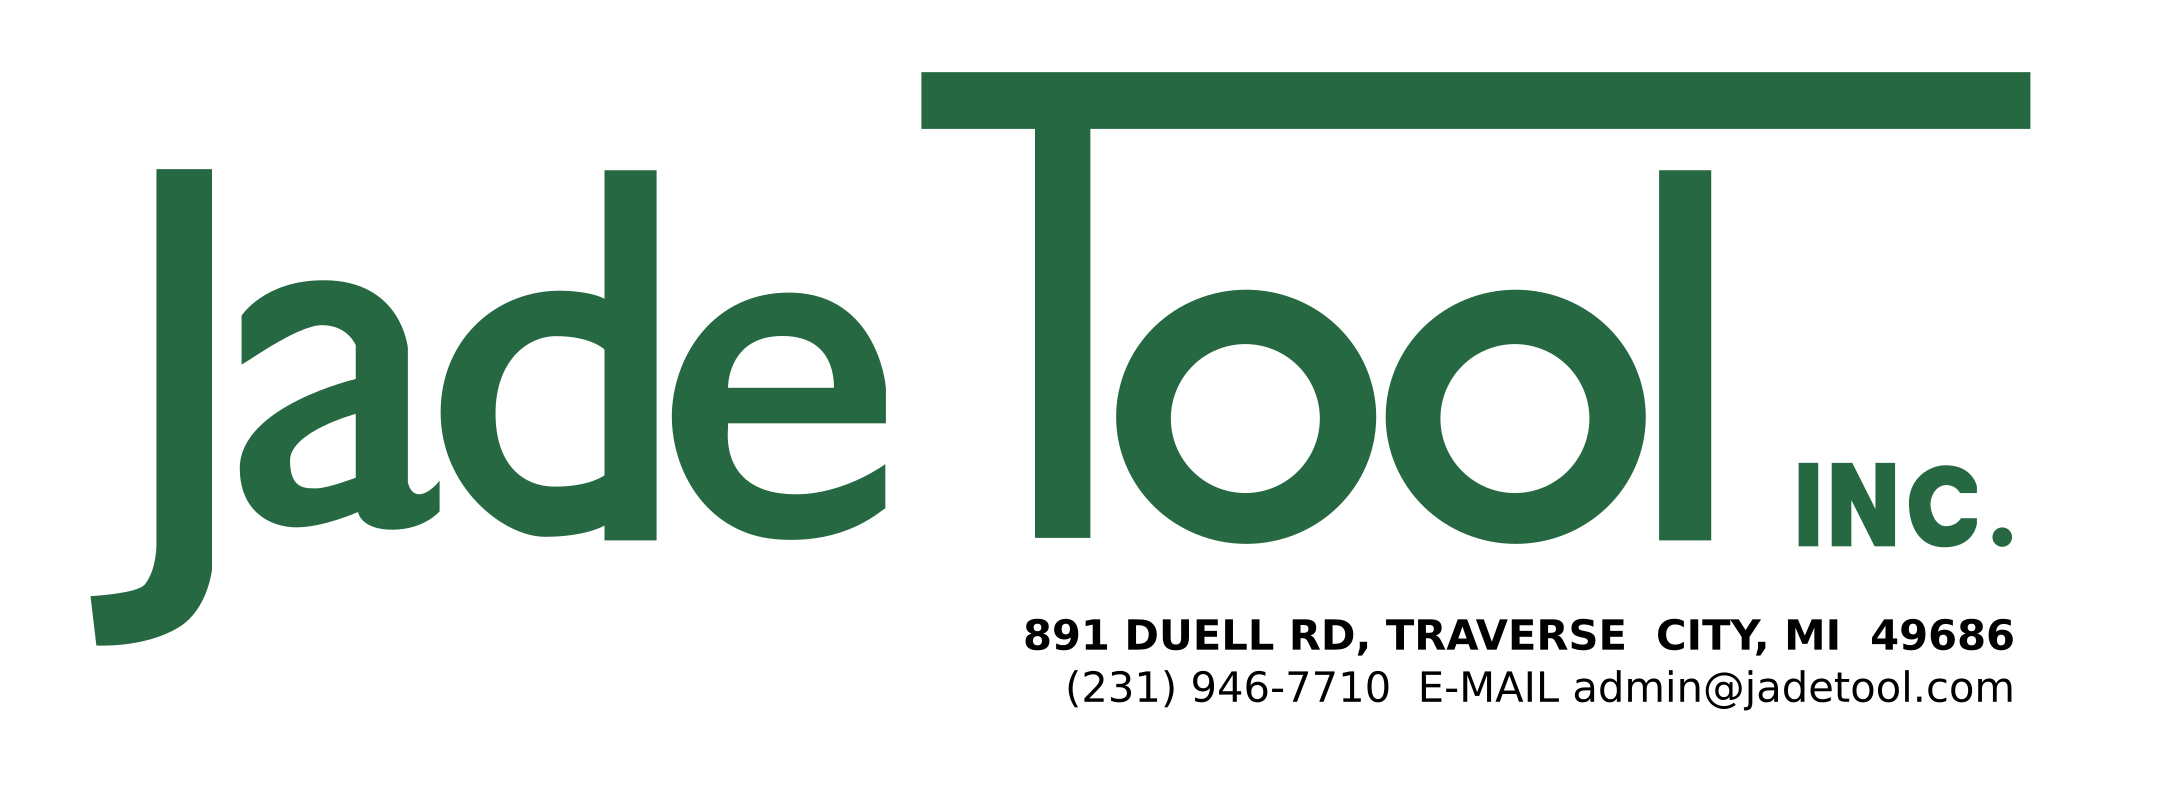 Jade Tool logo 